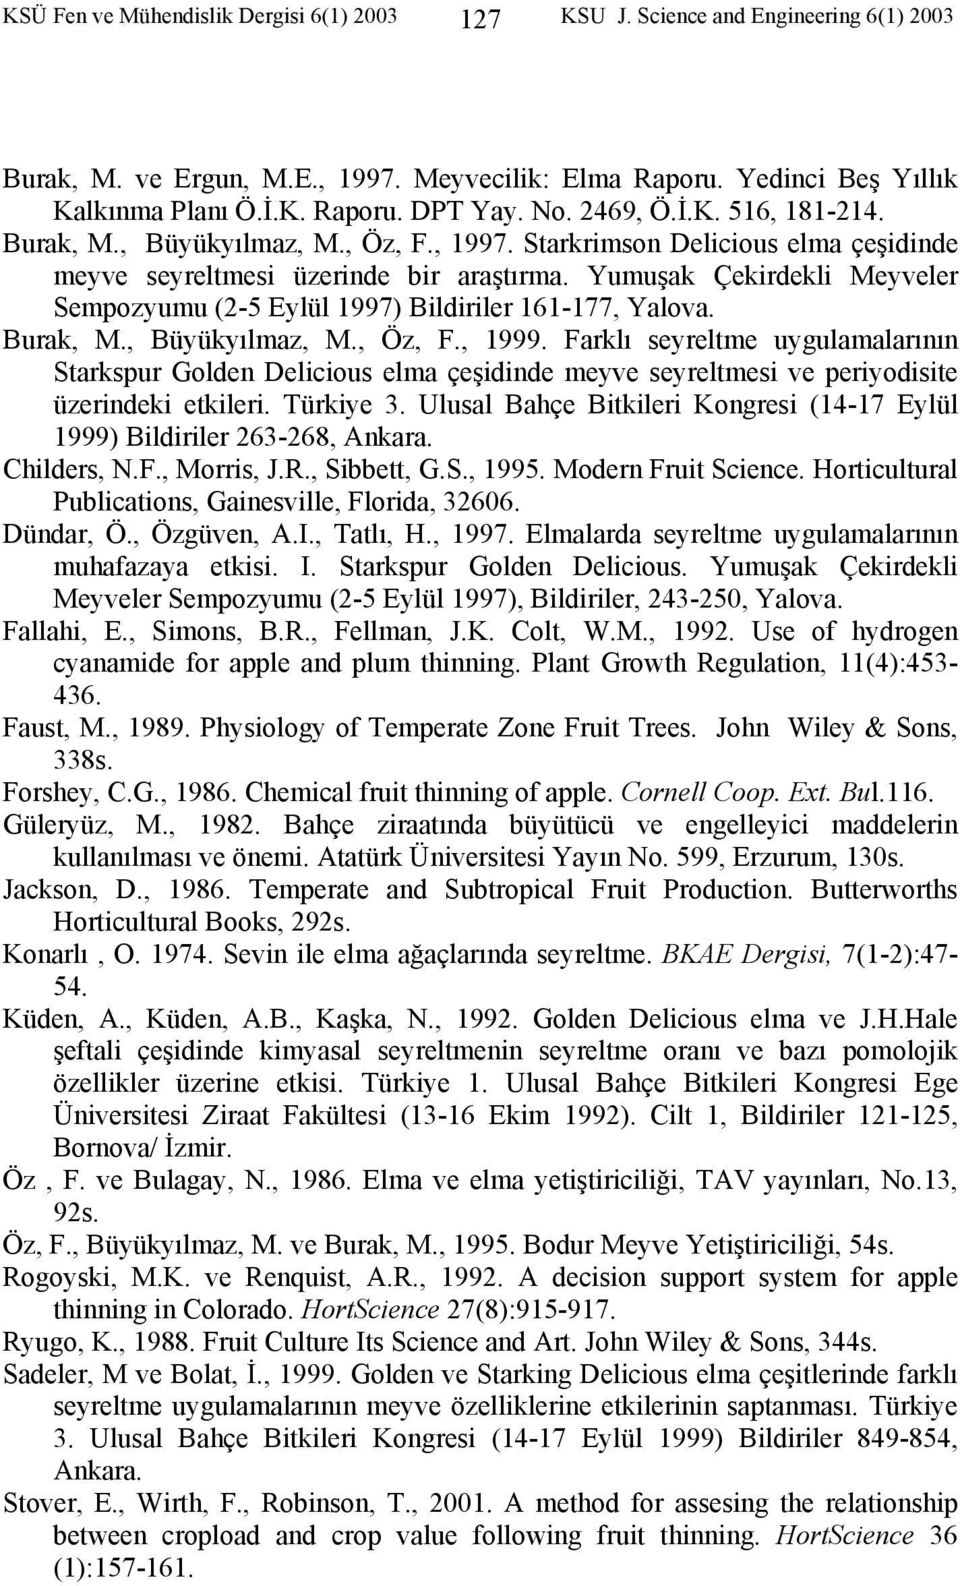 Yumuşak Çekirdekli Meyveler Sempozyumu (2-5 Eylül 1997) Bildiriler 161-177, Yalova. Burak, M., Büyükyılmaz, M., Öz, F., 1999.